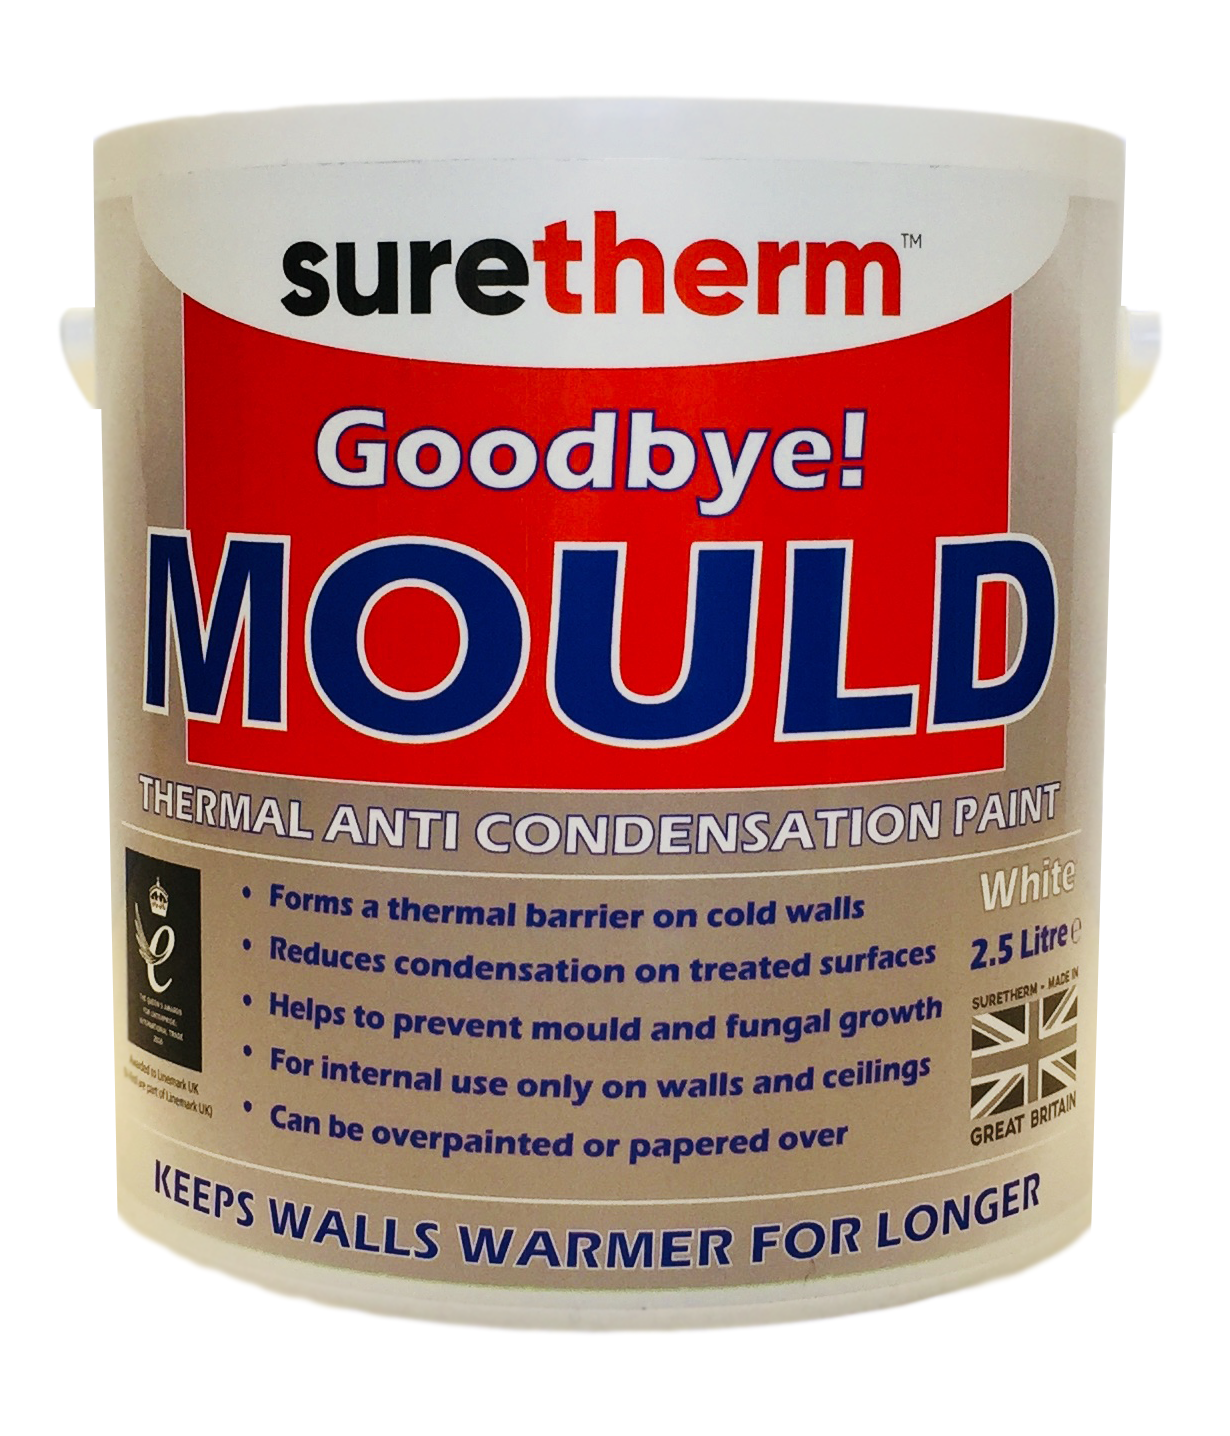 Suretherm Thermal Anti Condensation Paint 2.5 Litre